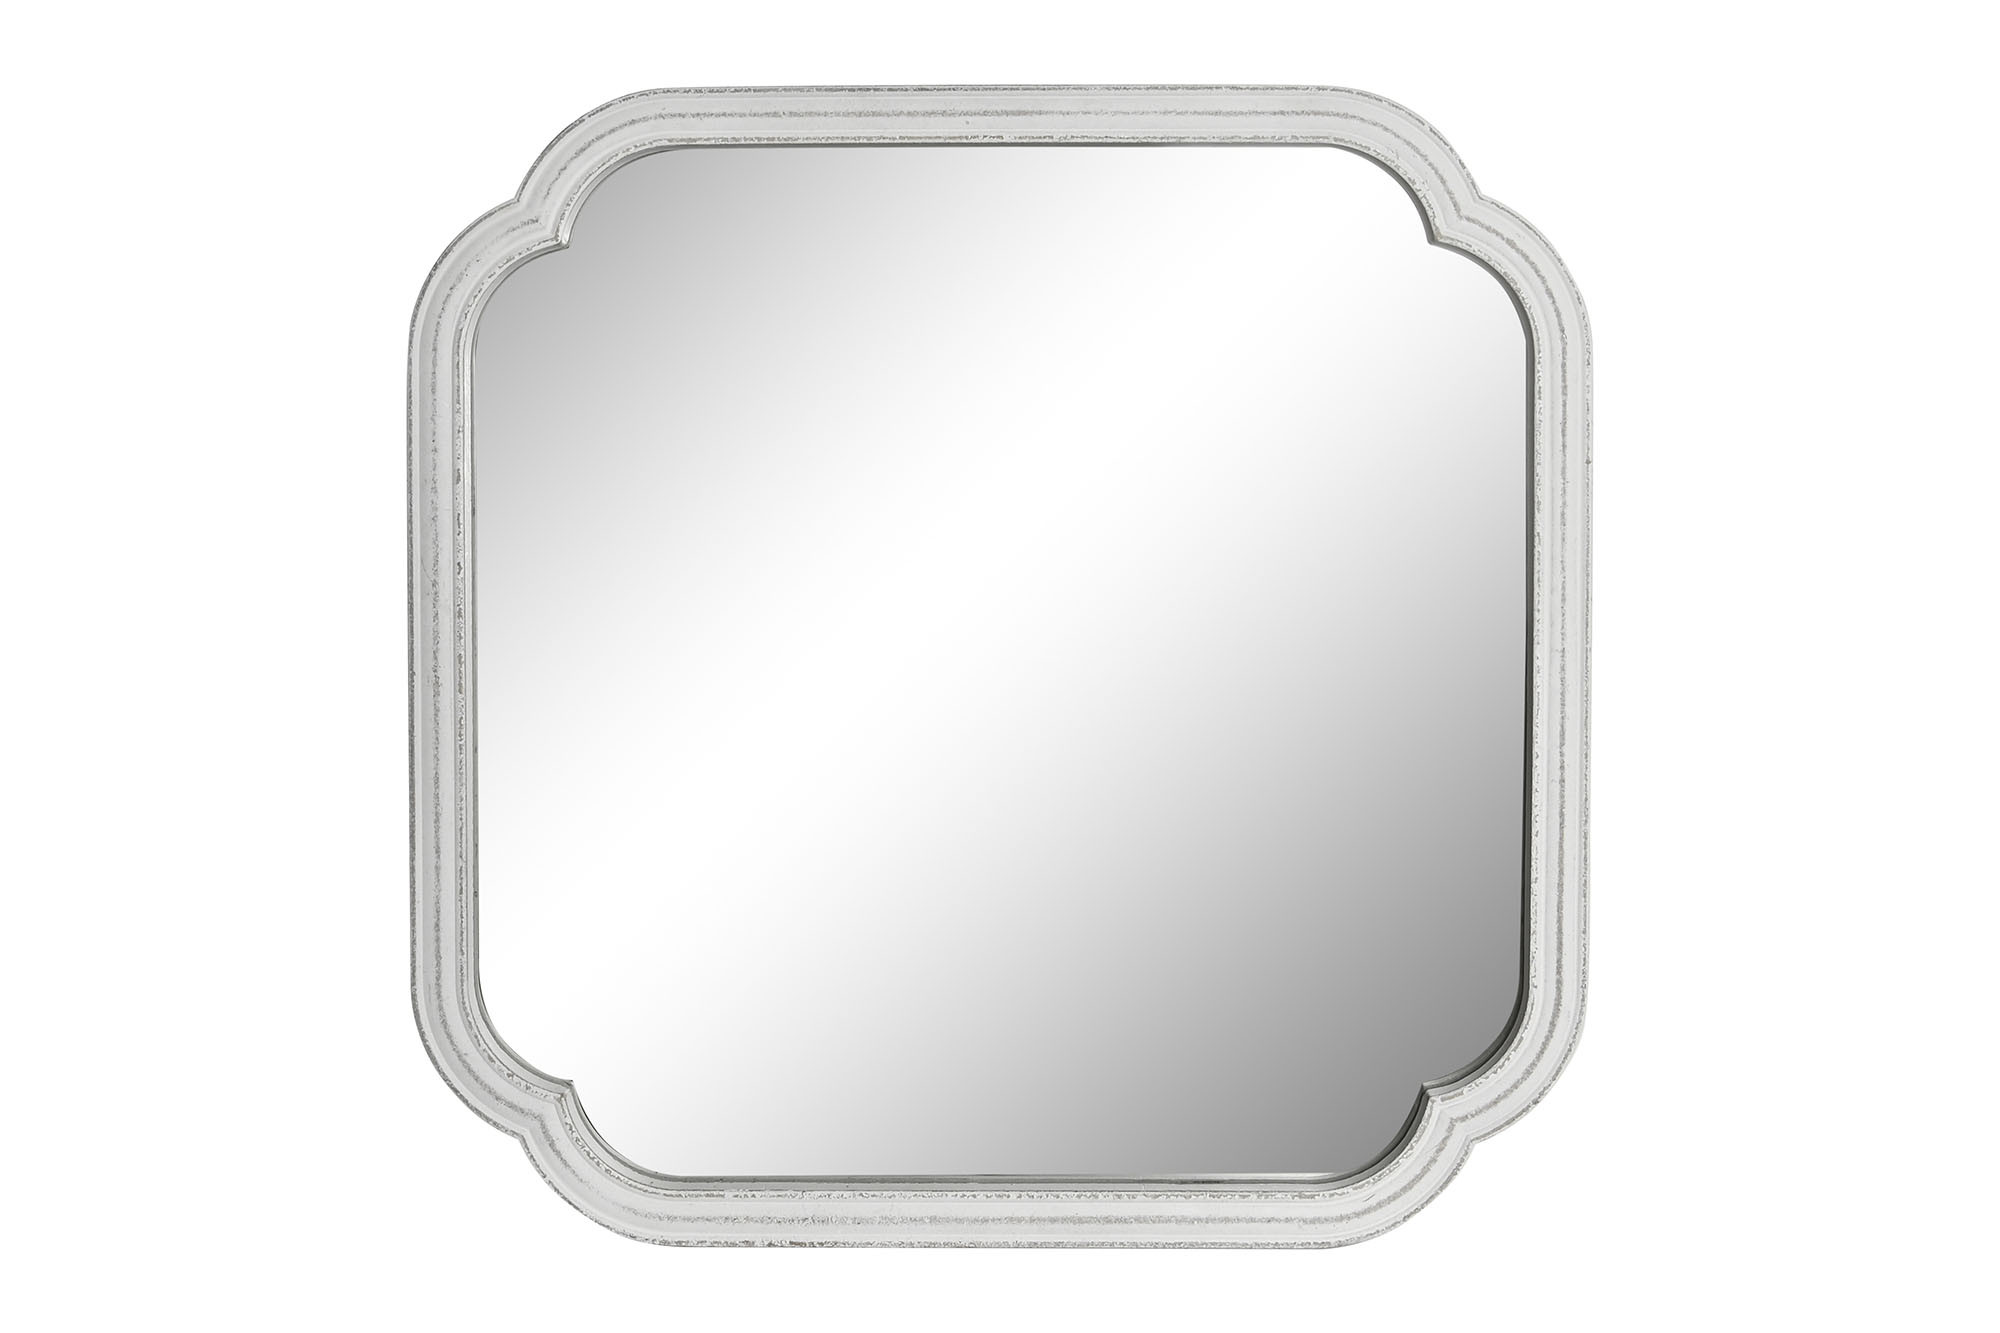 El espejo blanco desgastado es una pieza de decoración que se ha vuelto muy popular en los últimos años debido a su aspecto único y encantador. Este tipo de espejo tiene un acabado blanco desgastado, que le da una apariencia vintage y elegante, y puede ser utilizado para añadir un toque de encanto a cualquier habitación de la casa.